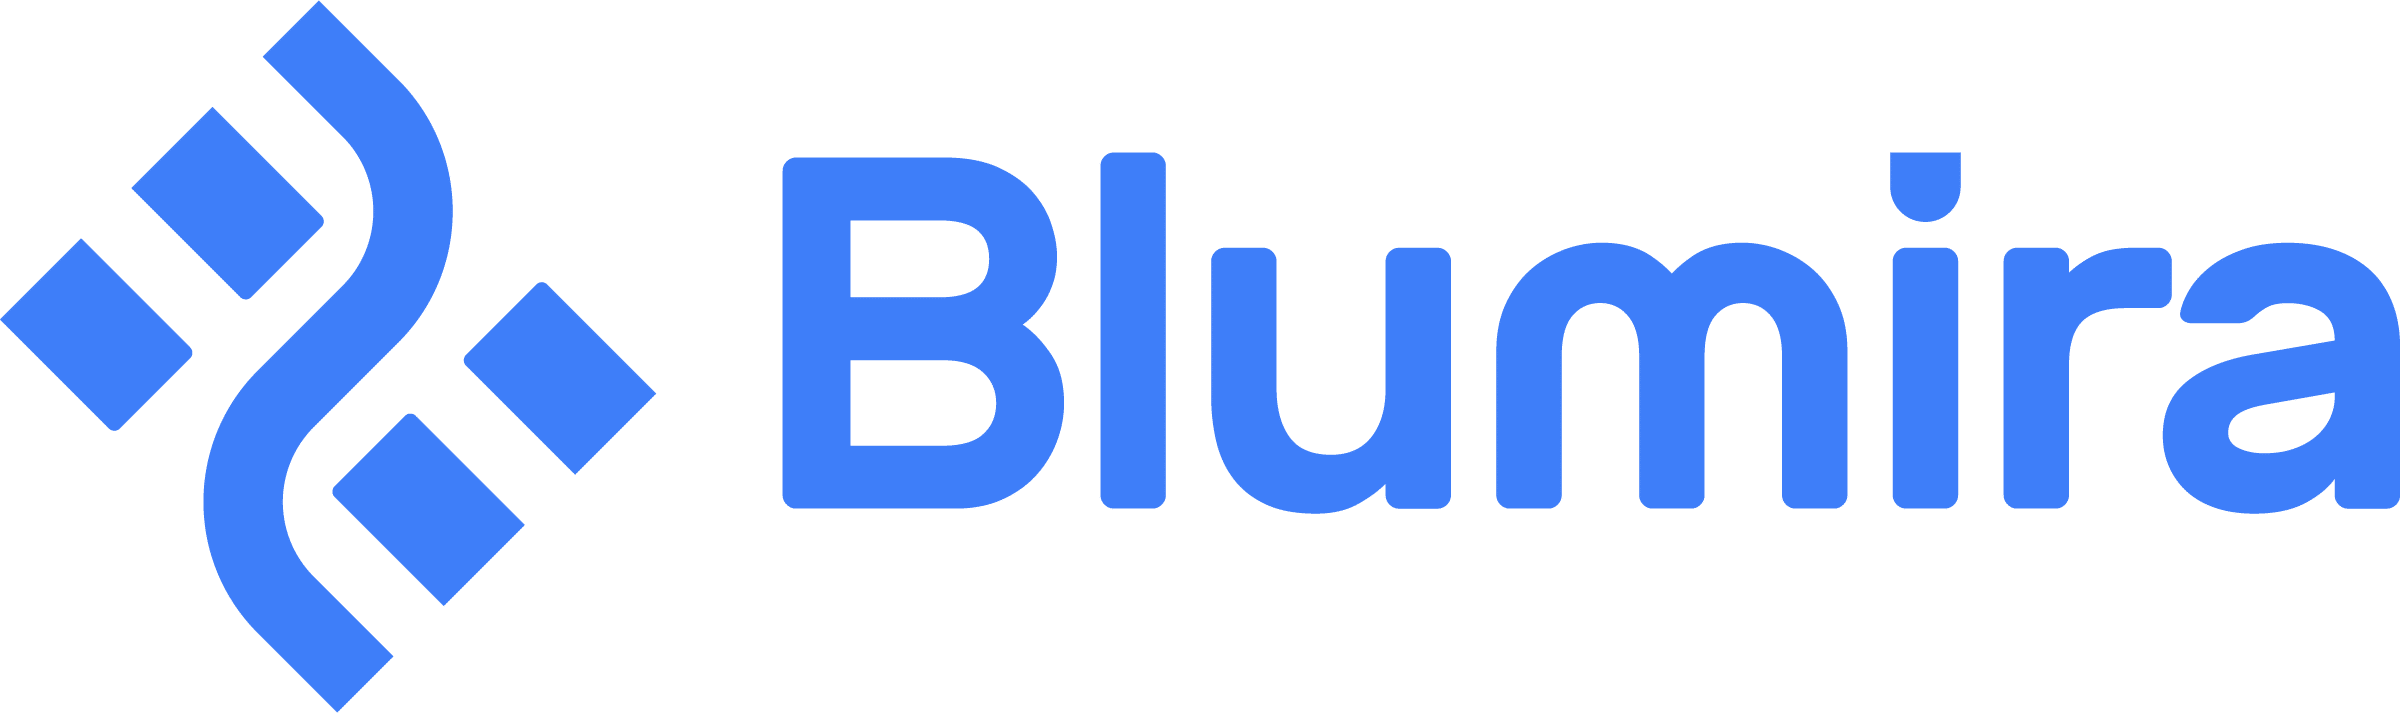 Blumira logo